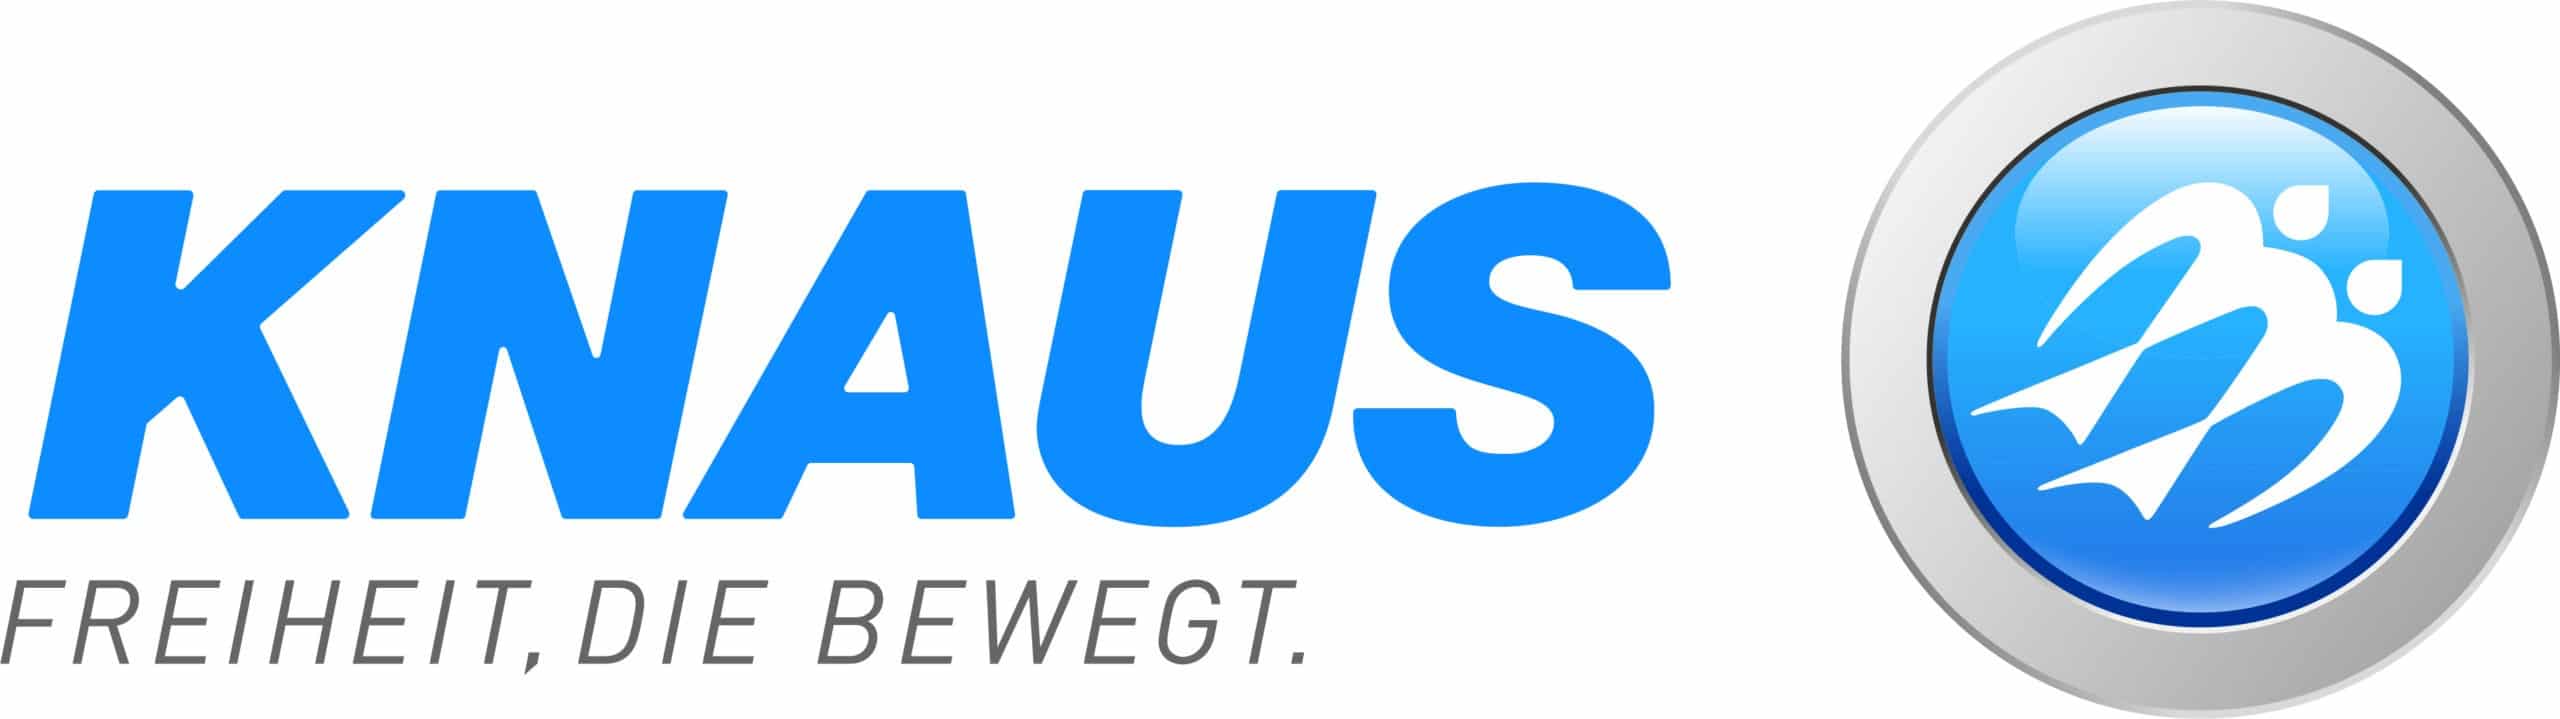 ktg-knaus-2016-05-logo